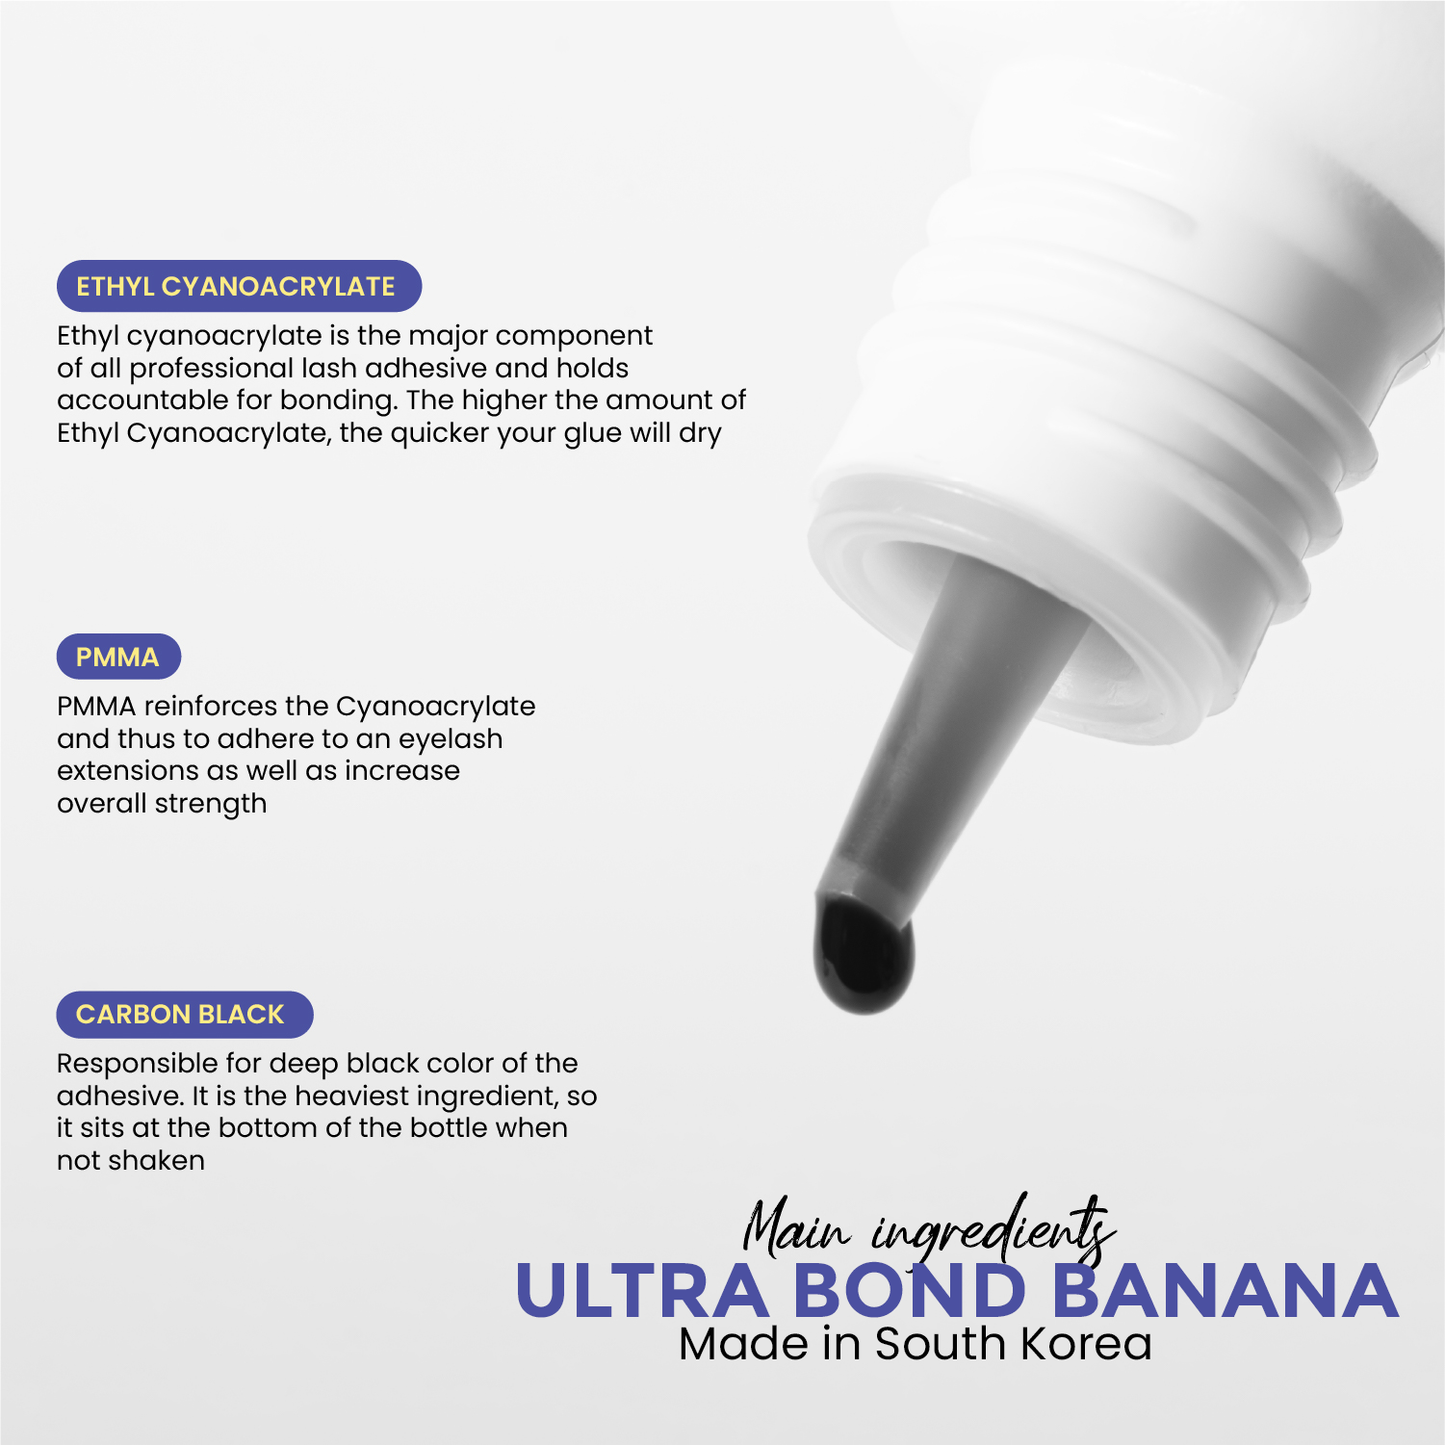 Ultra Bond Banana ingredients